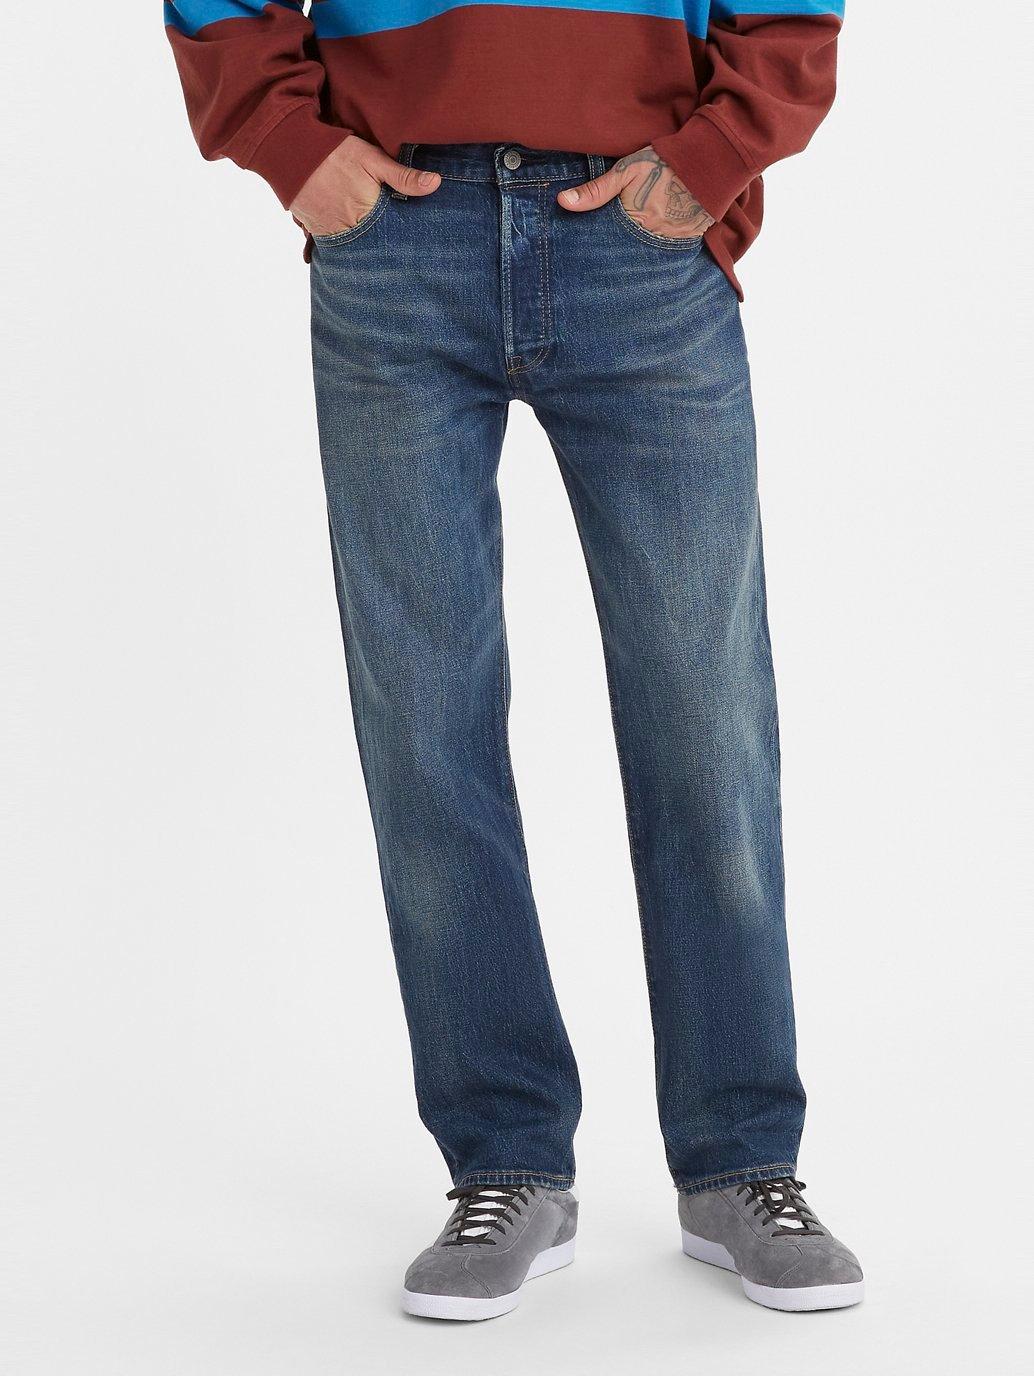 Buy Levi's® Men's 501® Original Jeans | Levi’s® Official Online Store PH